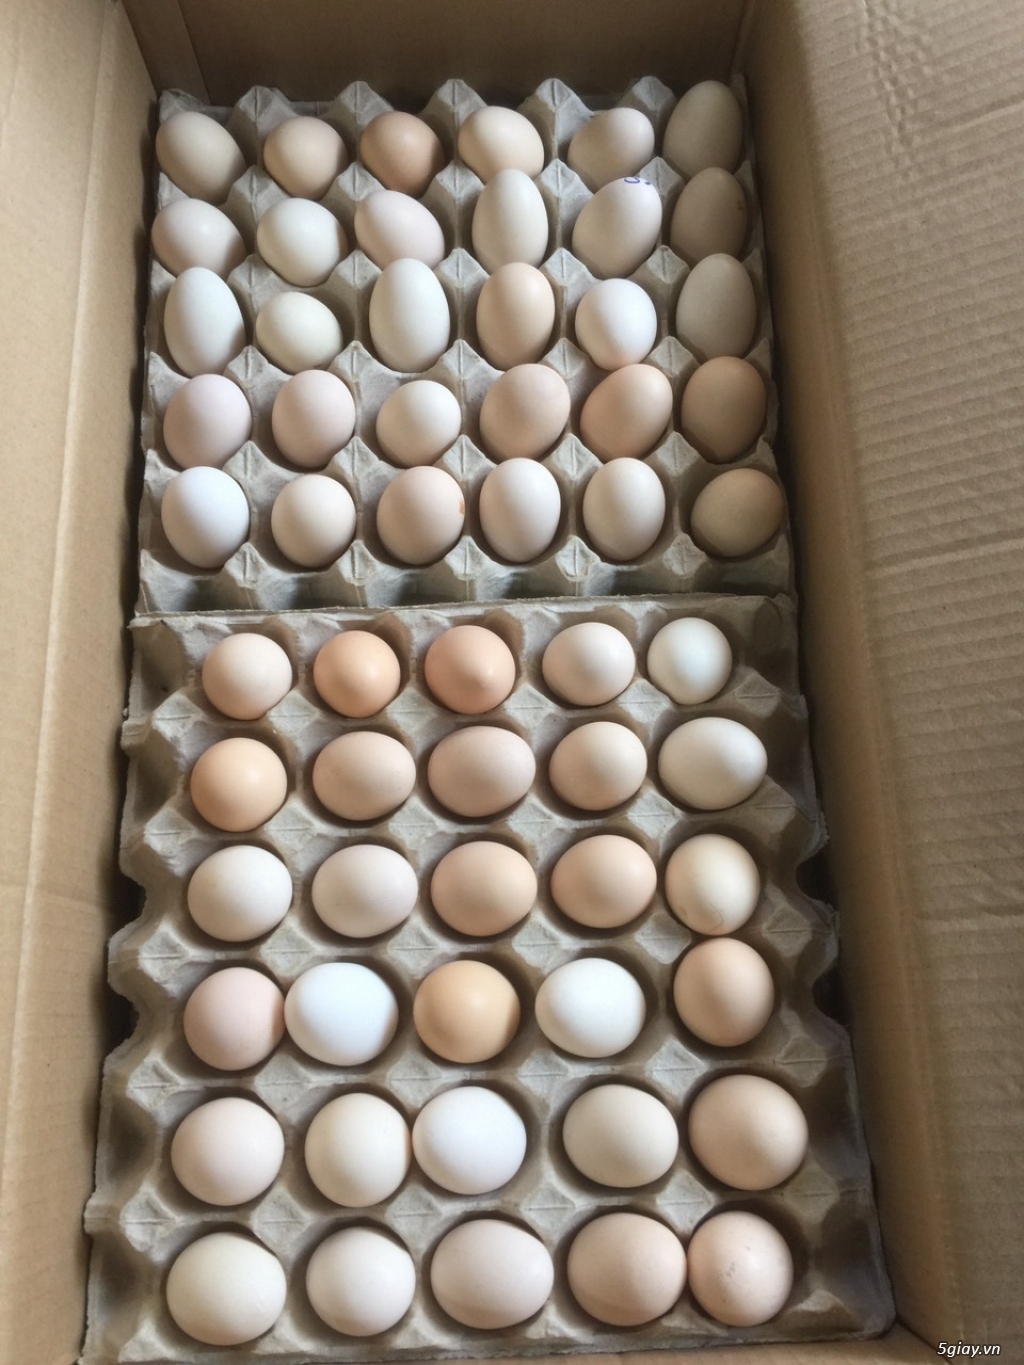 trang trại cần tìm đai lý, nhà phân phối trứng gà ác trên toàn quốc - 1